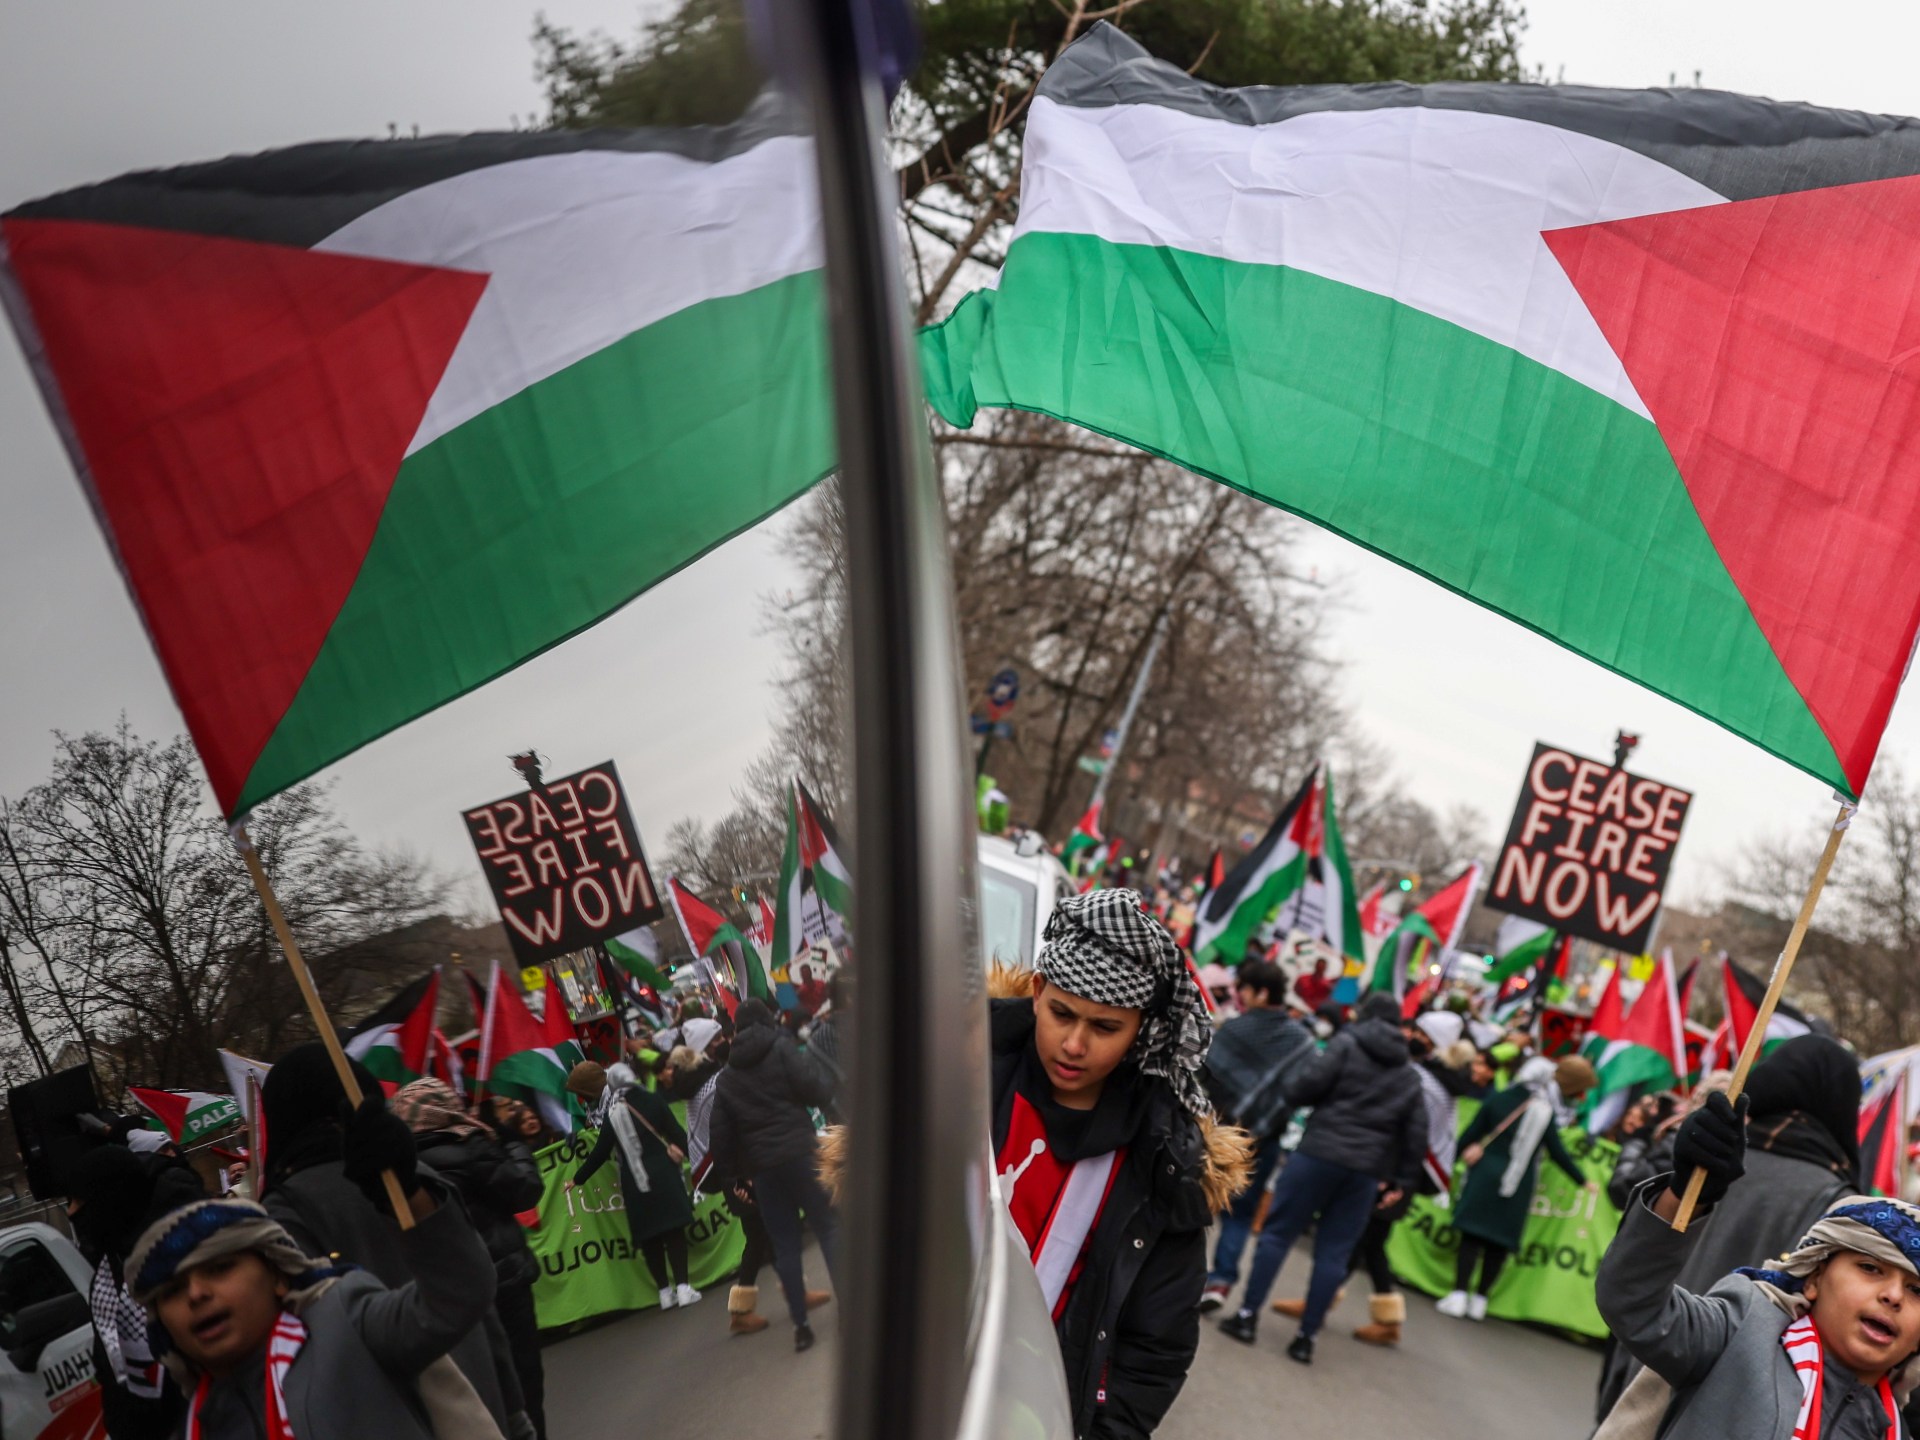 مظاهرات تعمّ مدنا أوروبية وأميركية نصرة لغزة وتنديدا بالعدوان الإسرائيلي | أخبار – البوكس نيوز